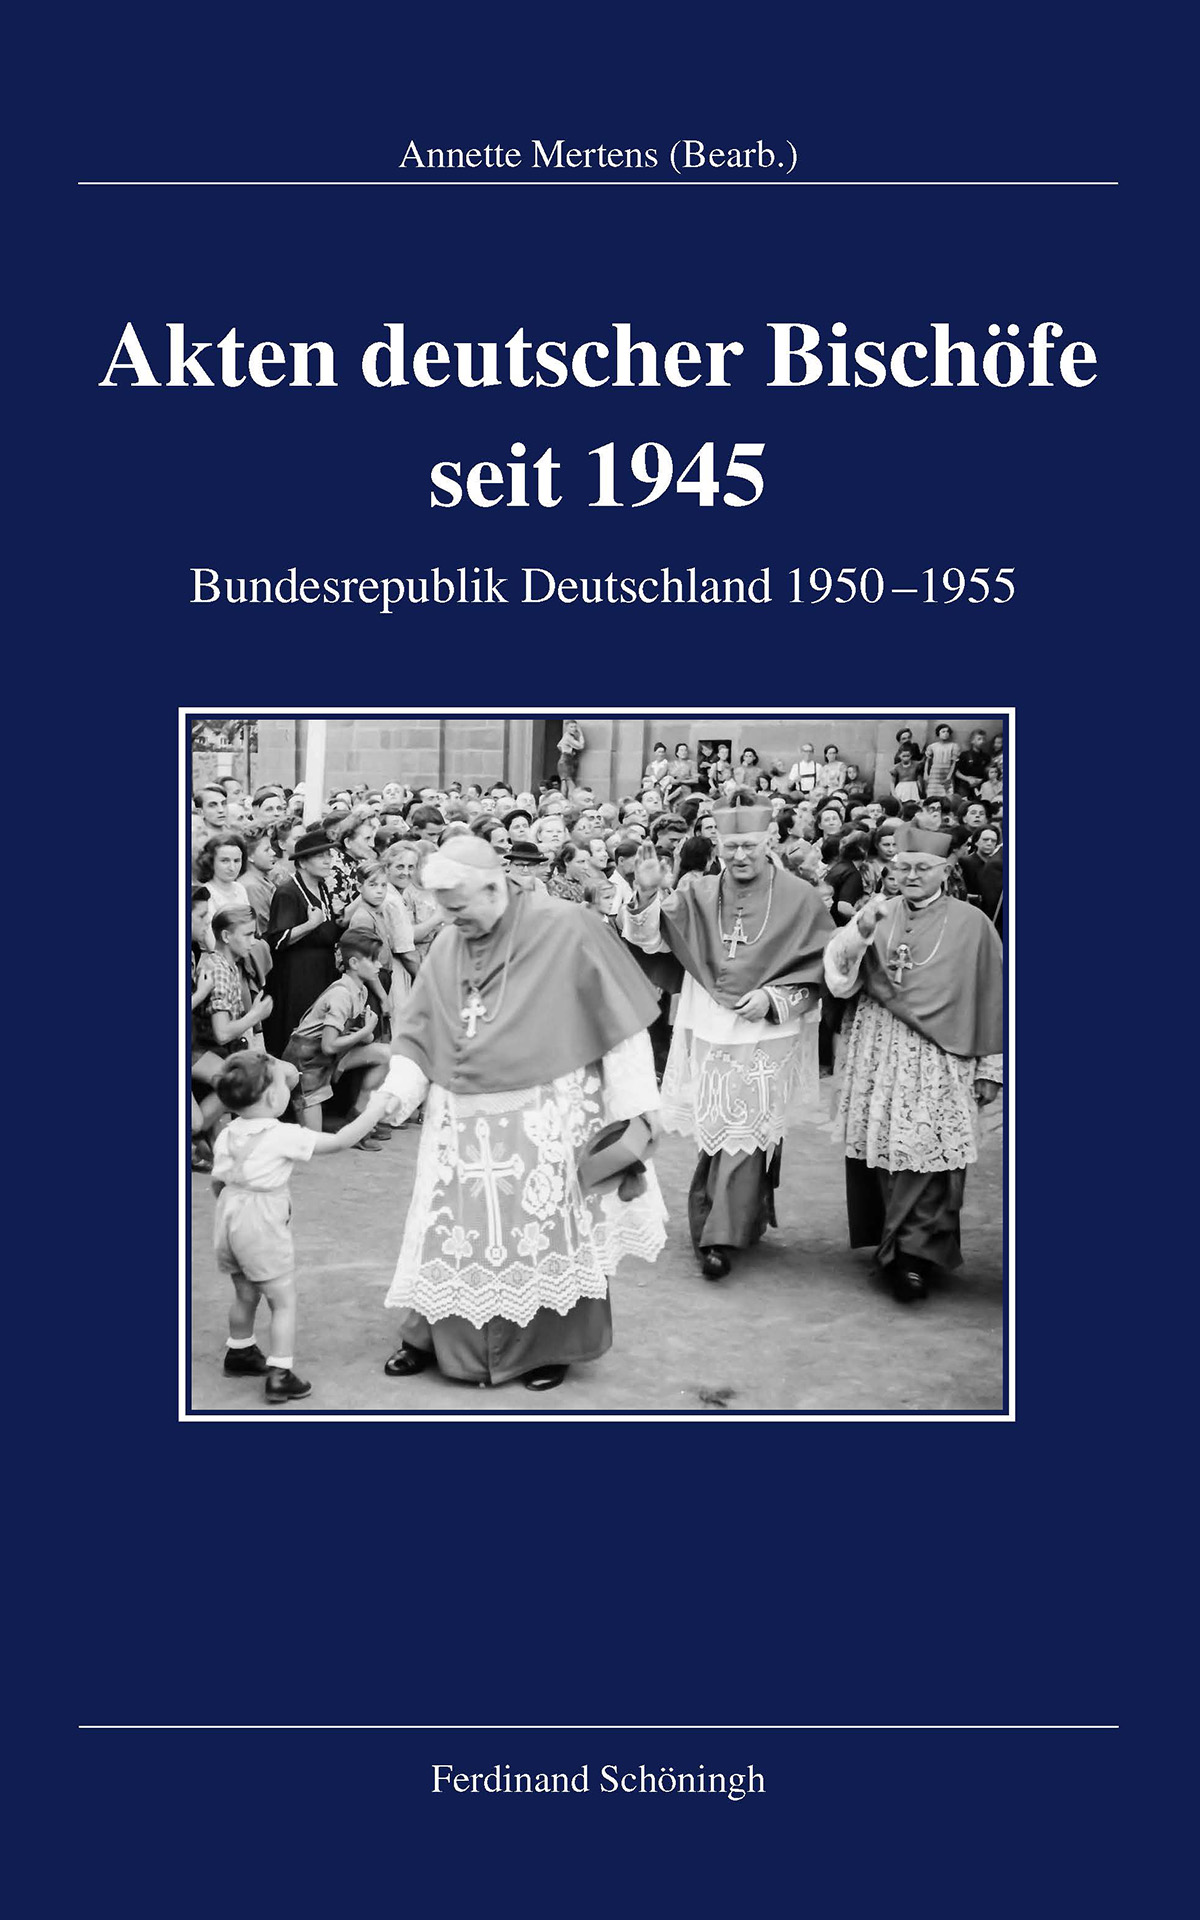 Akten deutscher Bischöfe seit 1945. Bundesrepublik Deutschland 1950–1955, bearb. von Annette Mertens.